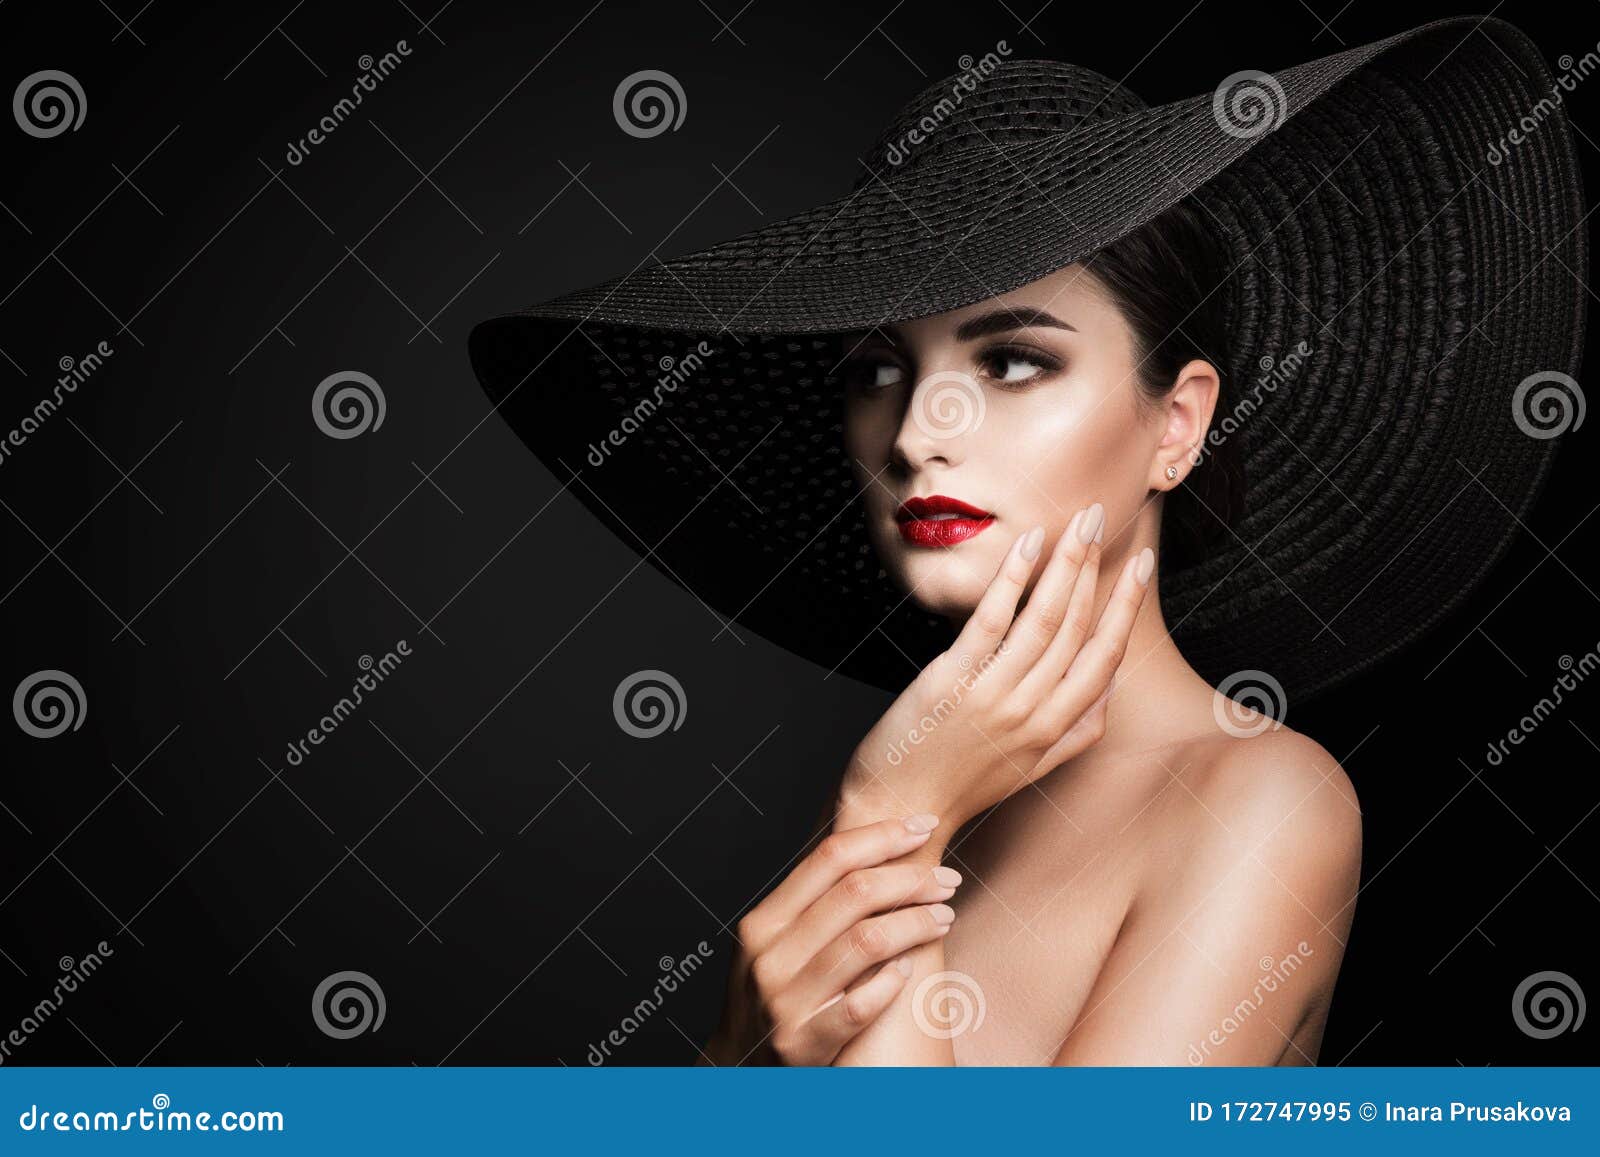 woman in broad brim hat, fashion model beauty portrait, elegant lady in wide brimmed hat